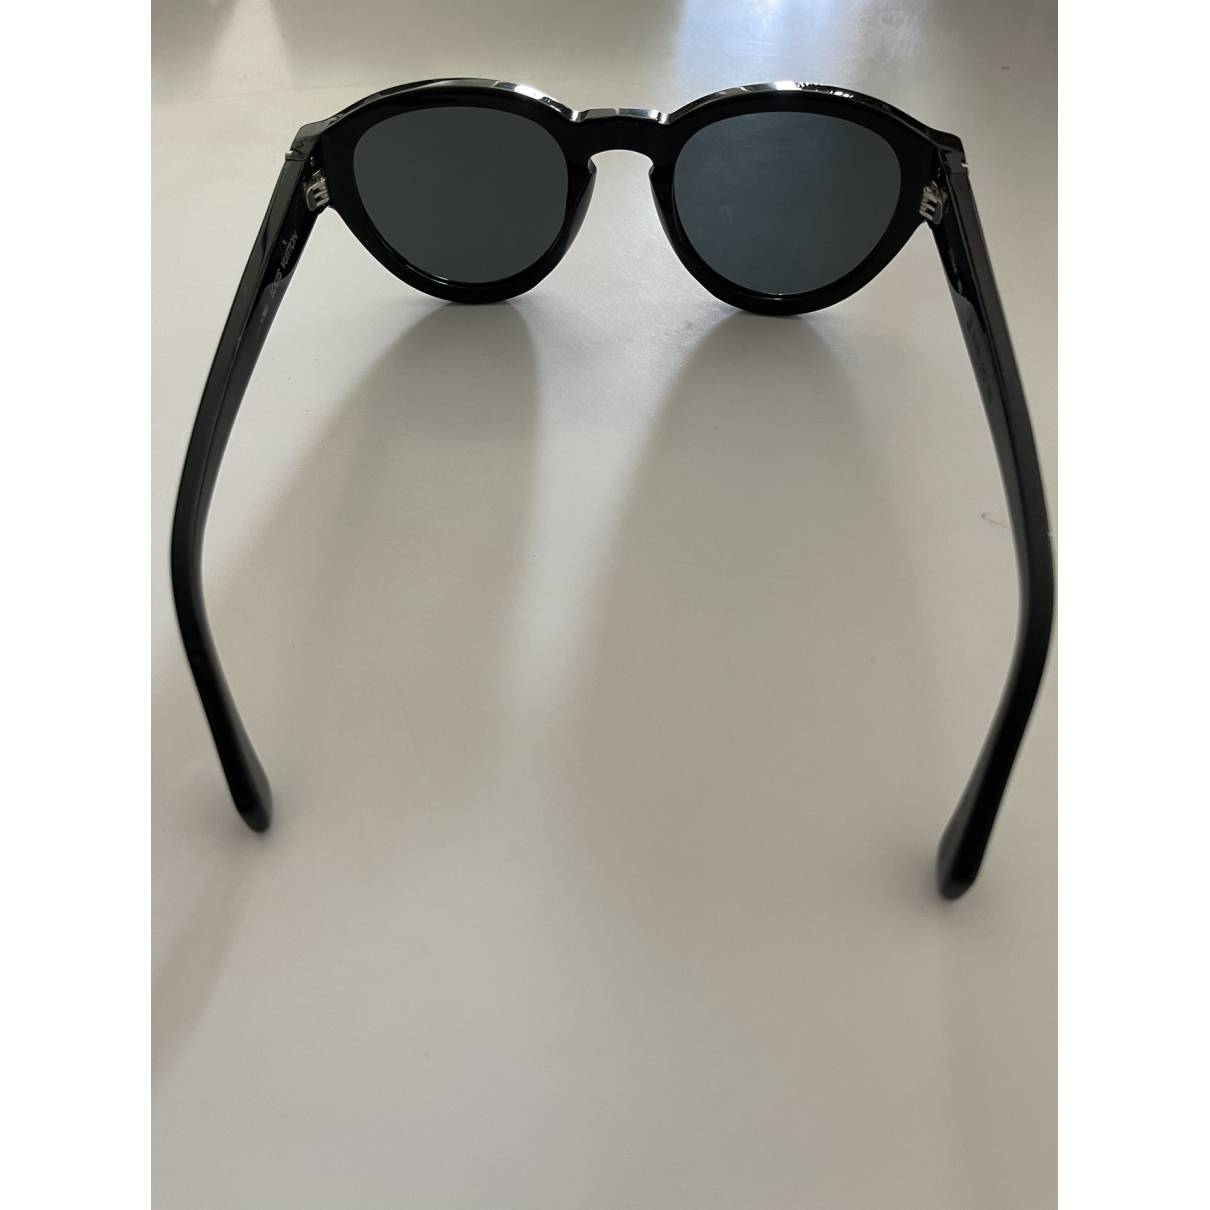 Sunglasses Louis Vuitton Black in Plastic - 34448612